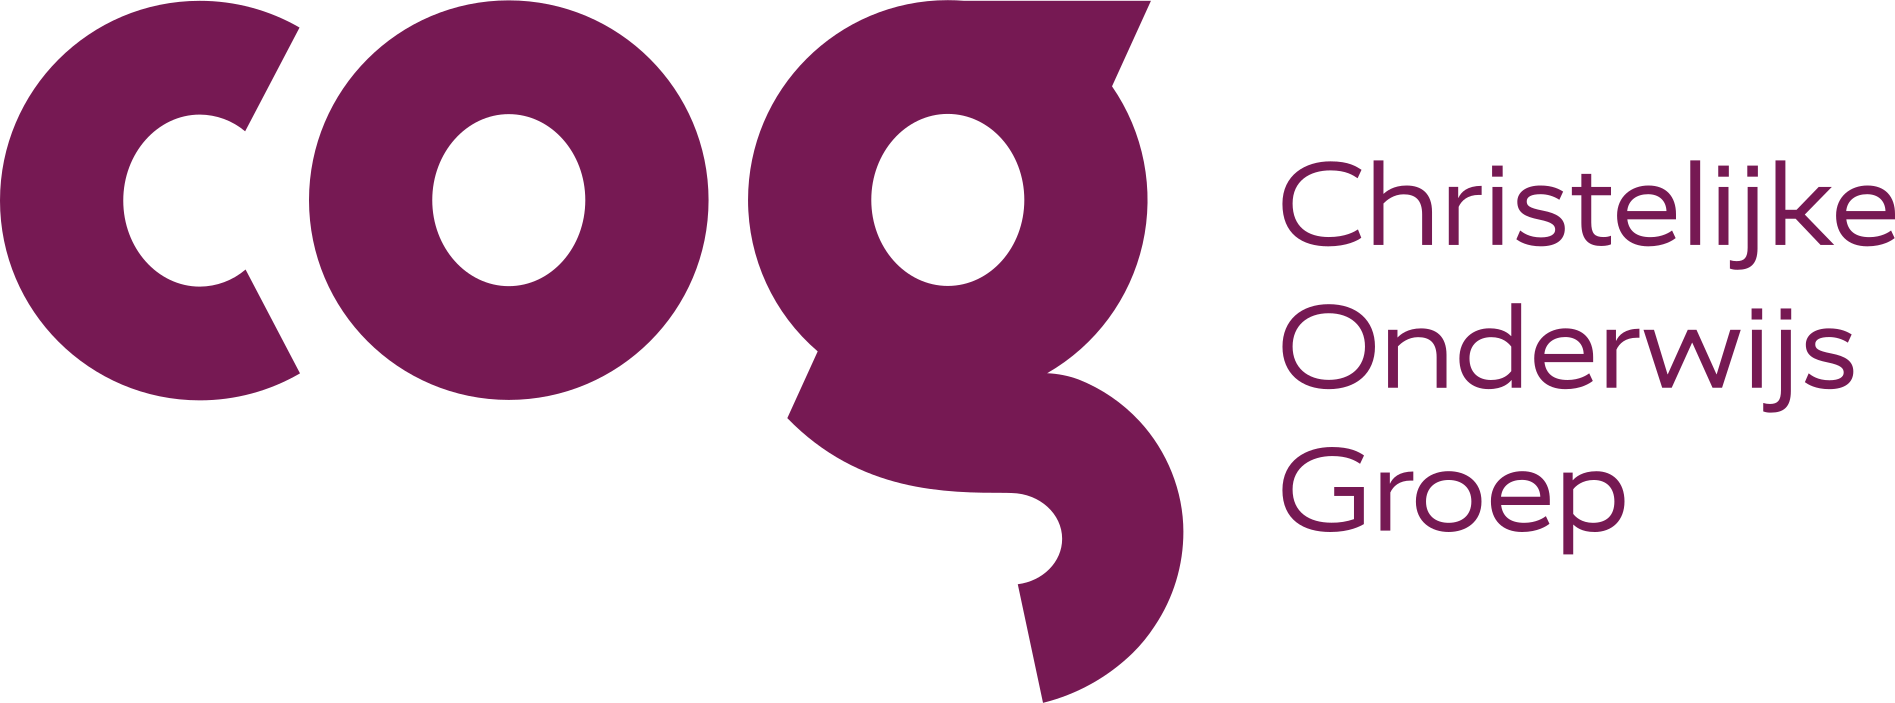 COG-logo